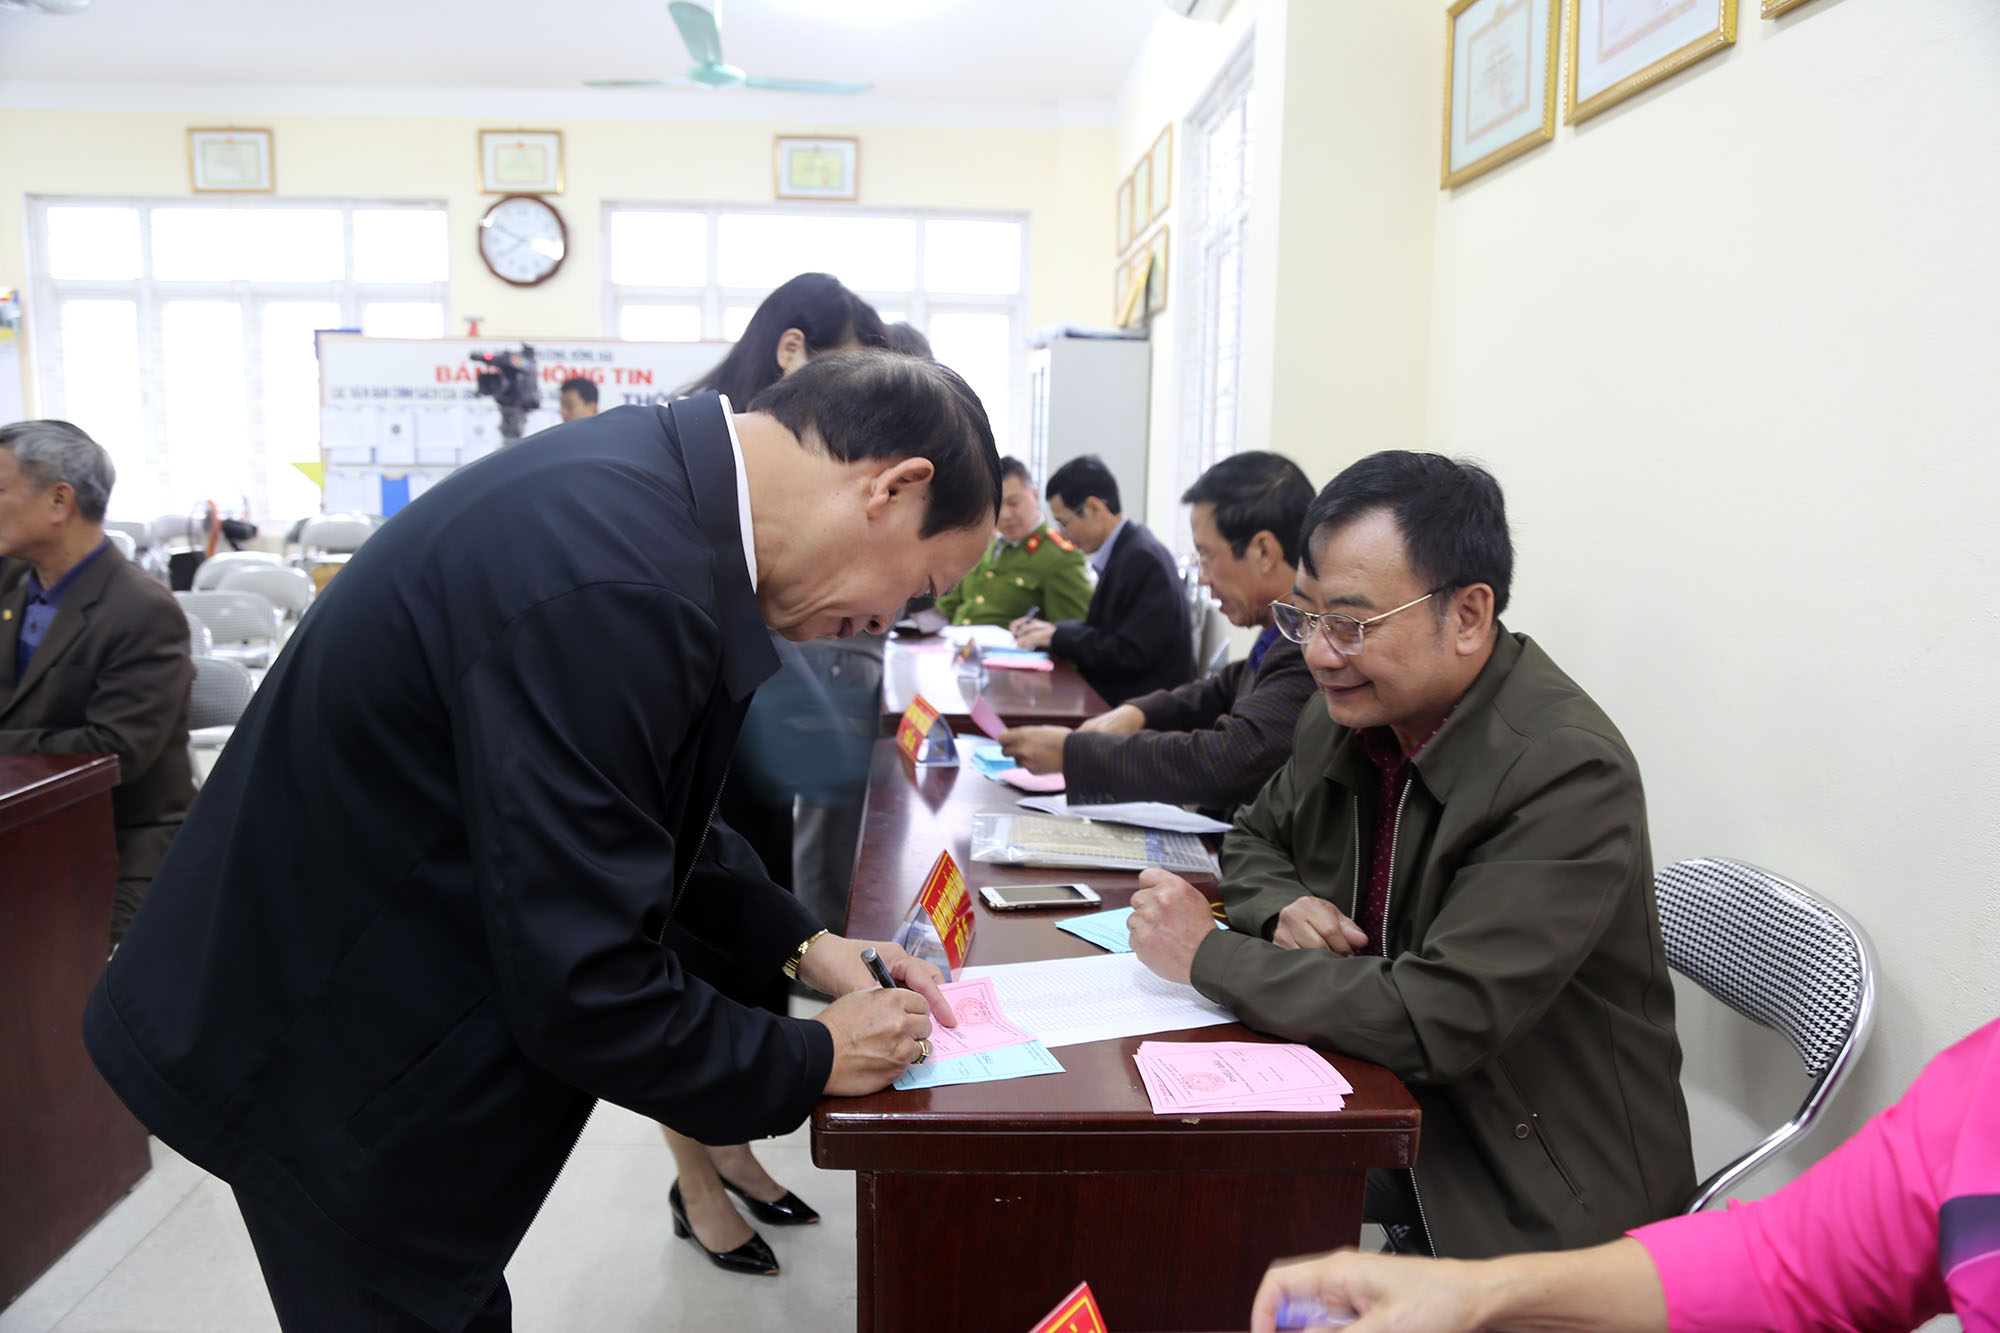  Cử tri khu phố 8, phường Hồng Hải, TP Hạ Long hào hứng trong ngày bầu cử khu trưởng.